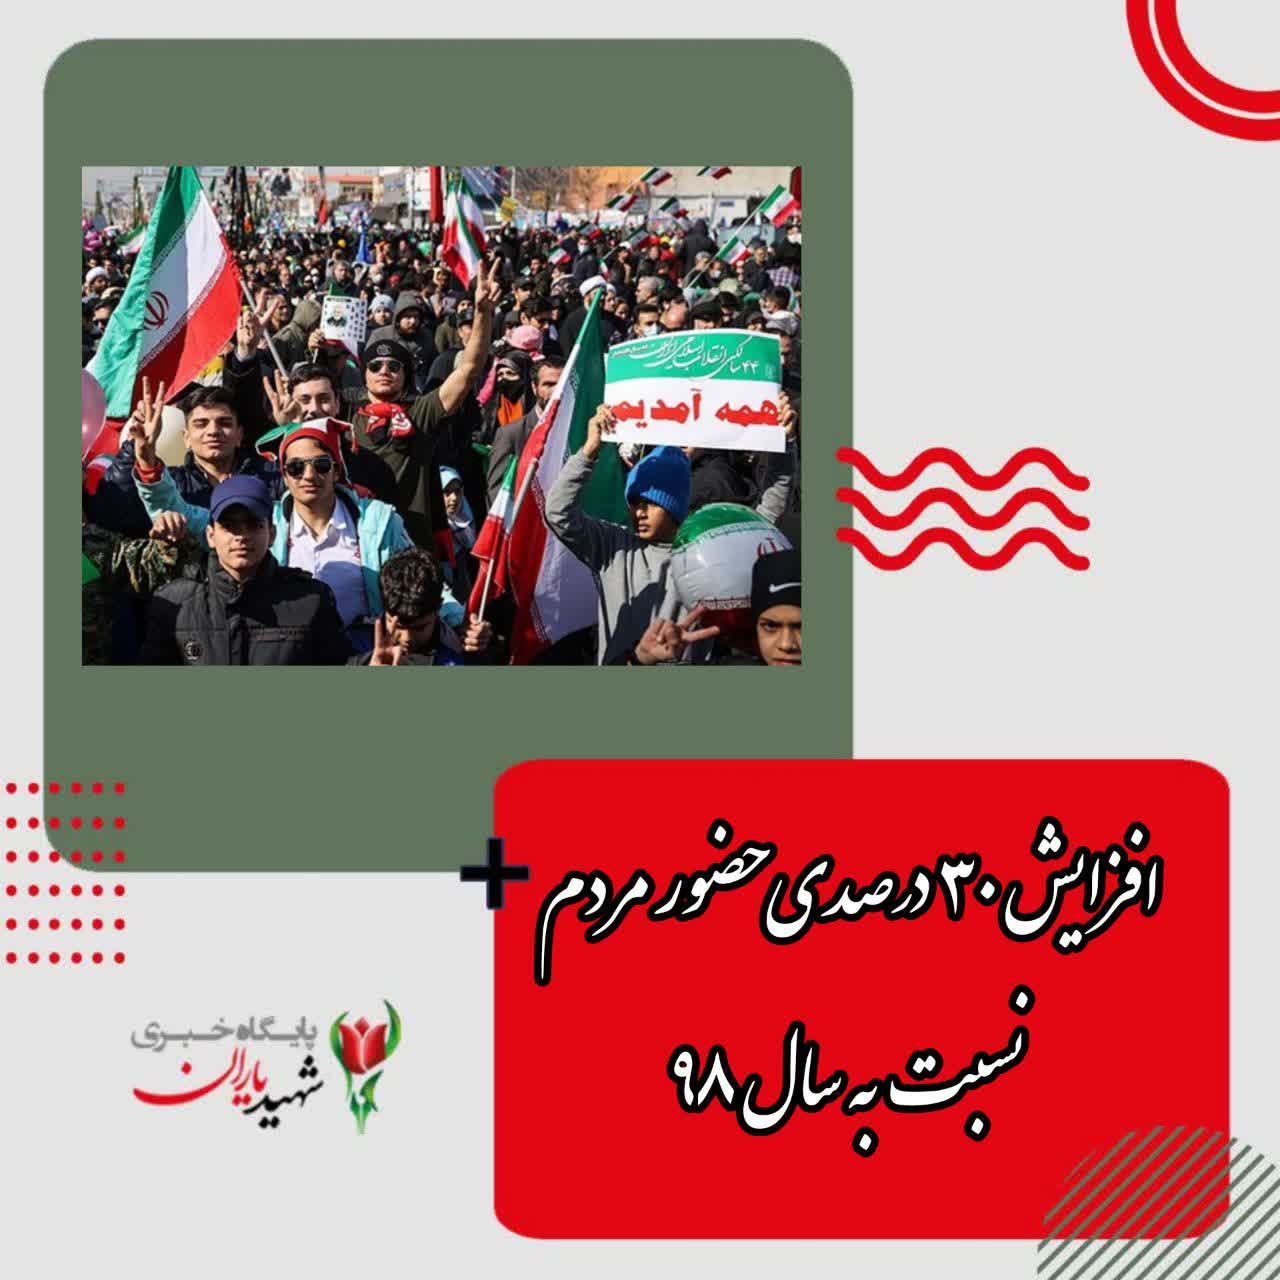 حضور بیش از ۲۰ میلیون ایرانی در راهپیمایی ۲۲ بهمن ۱۴۰۱/ افزایش ۳۰ درصدی حضور مردم نسبت به سال ۹۸